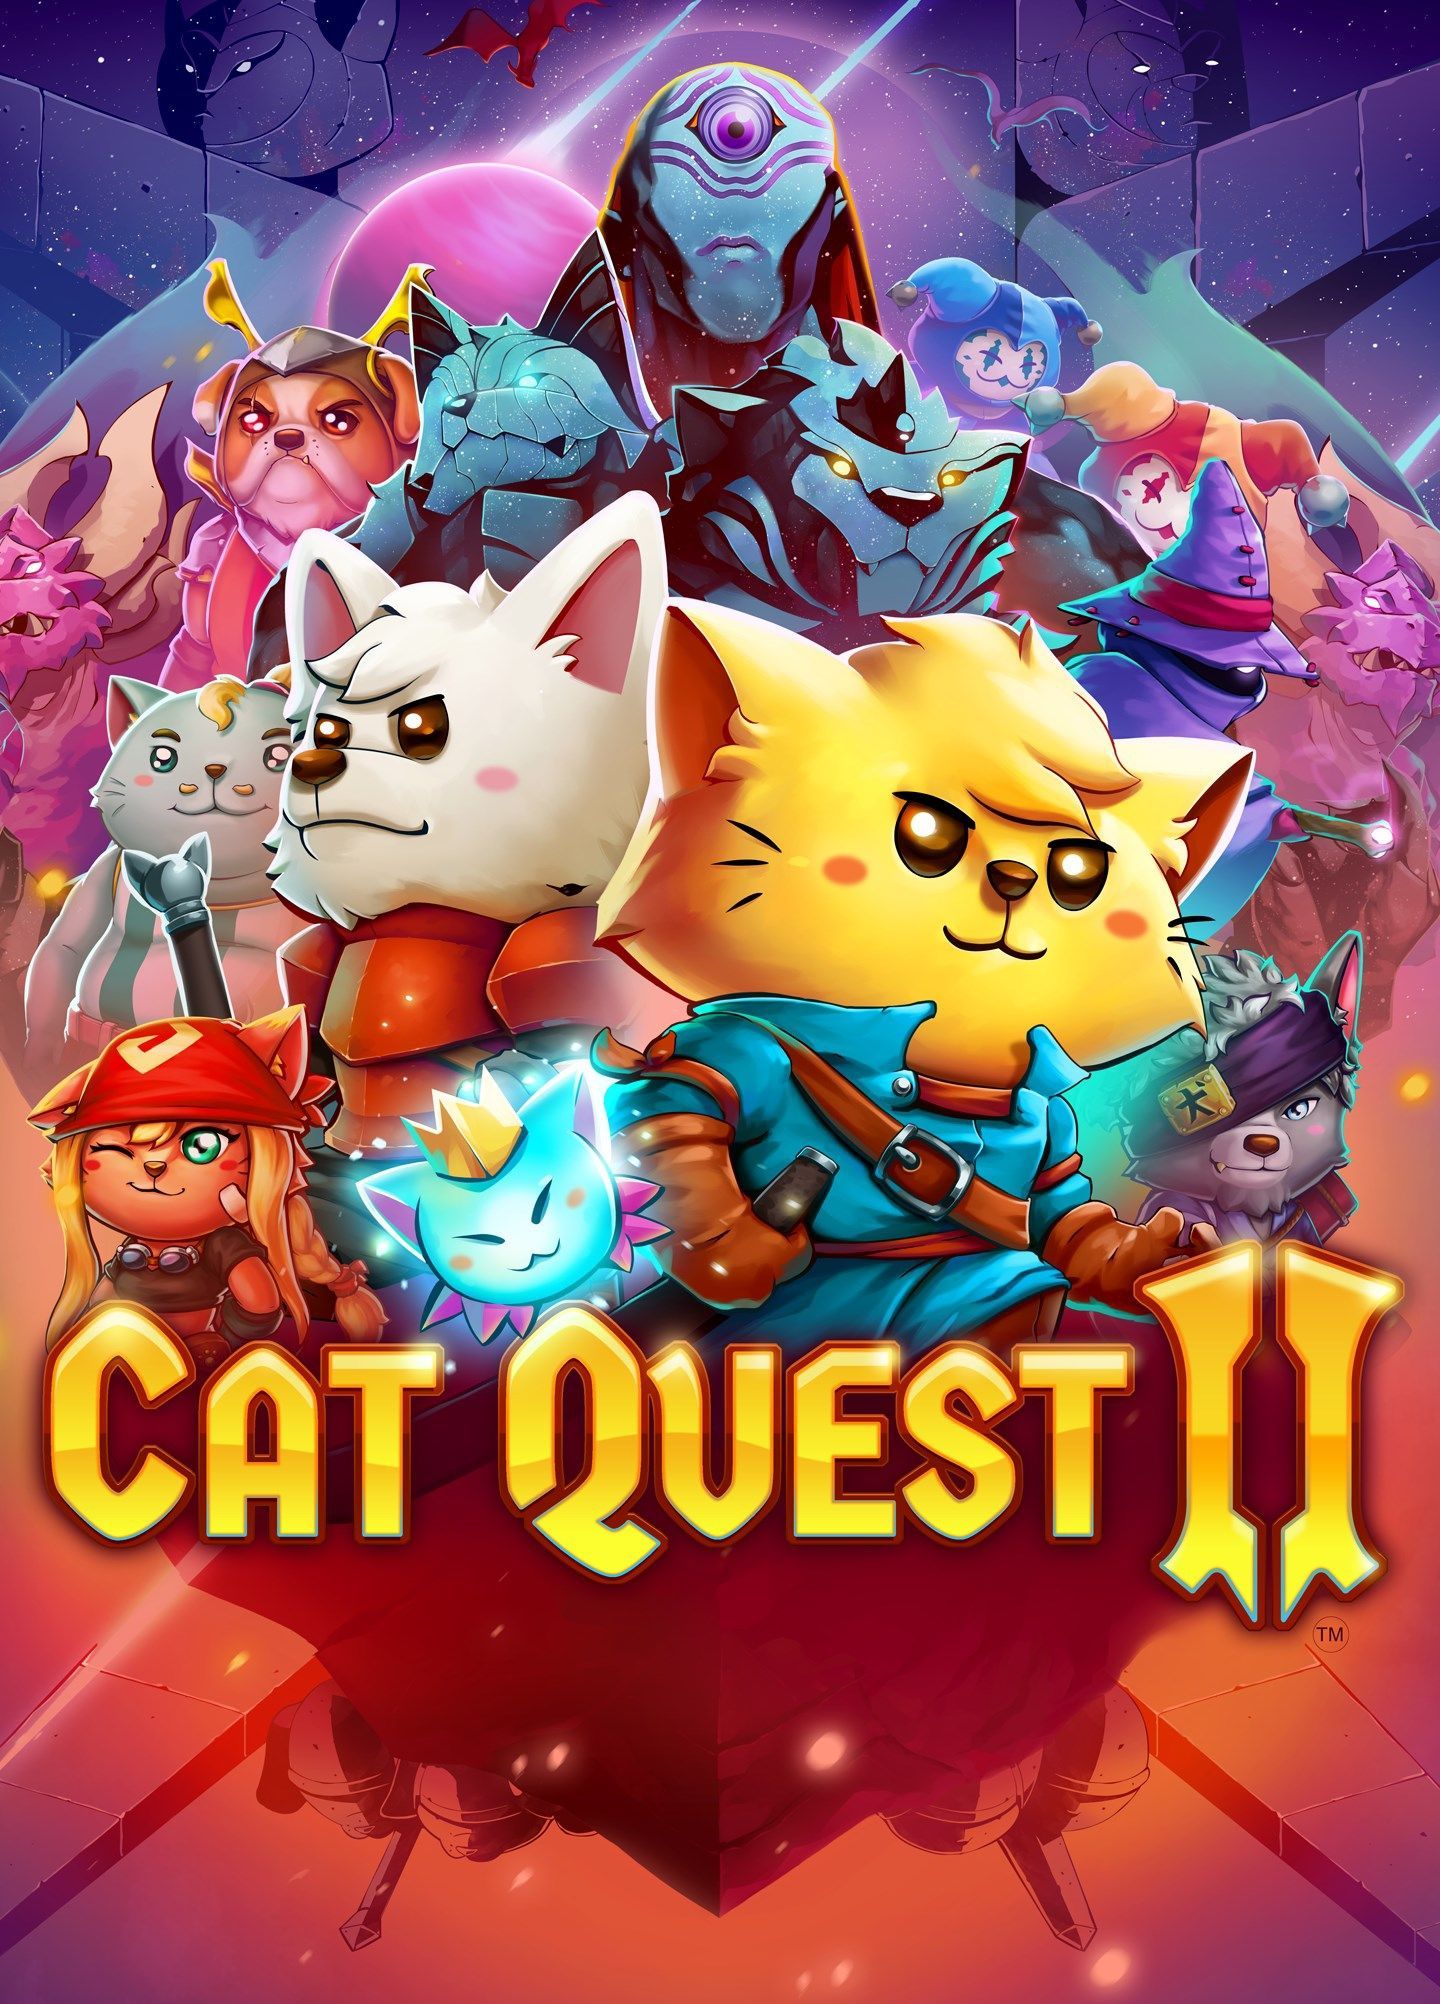 Cat Quest II (для Steam) [PC, Цифровая версия] (Цифровая версия)